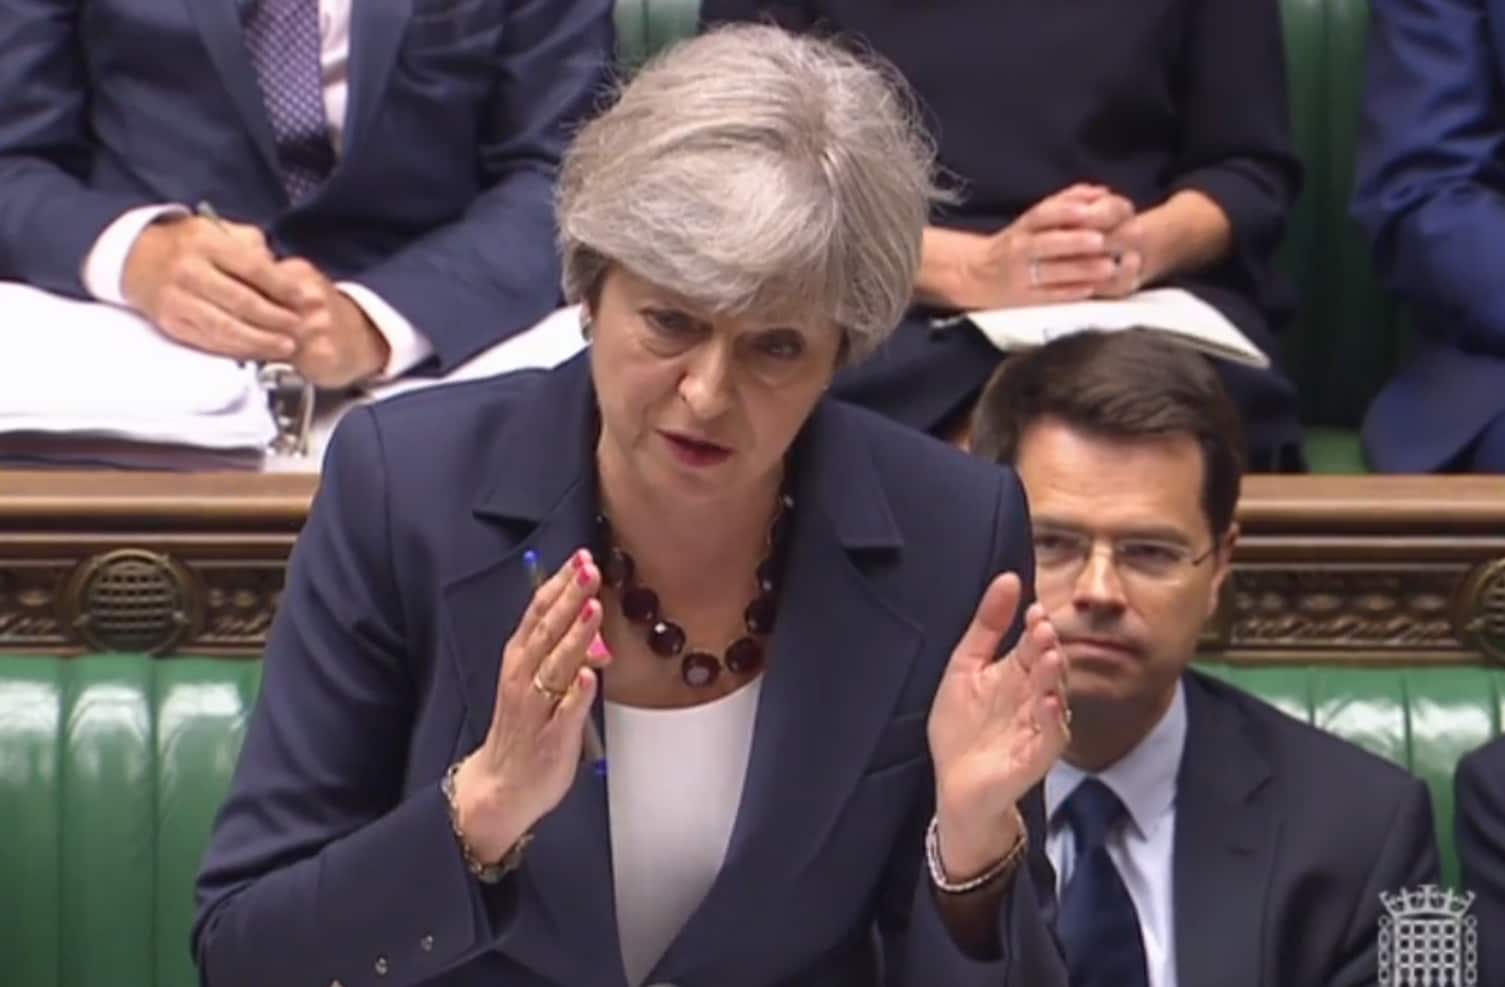 Regering-May doorstaat eerste test in Brits parlement